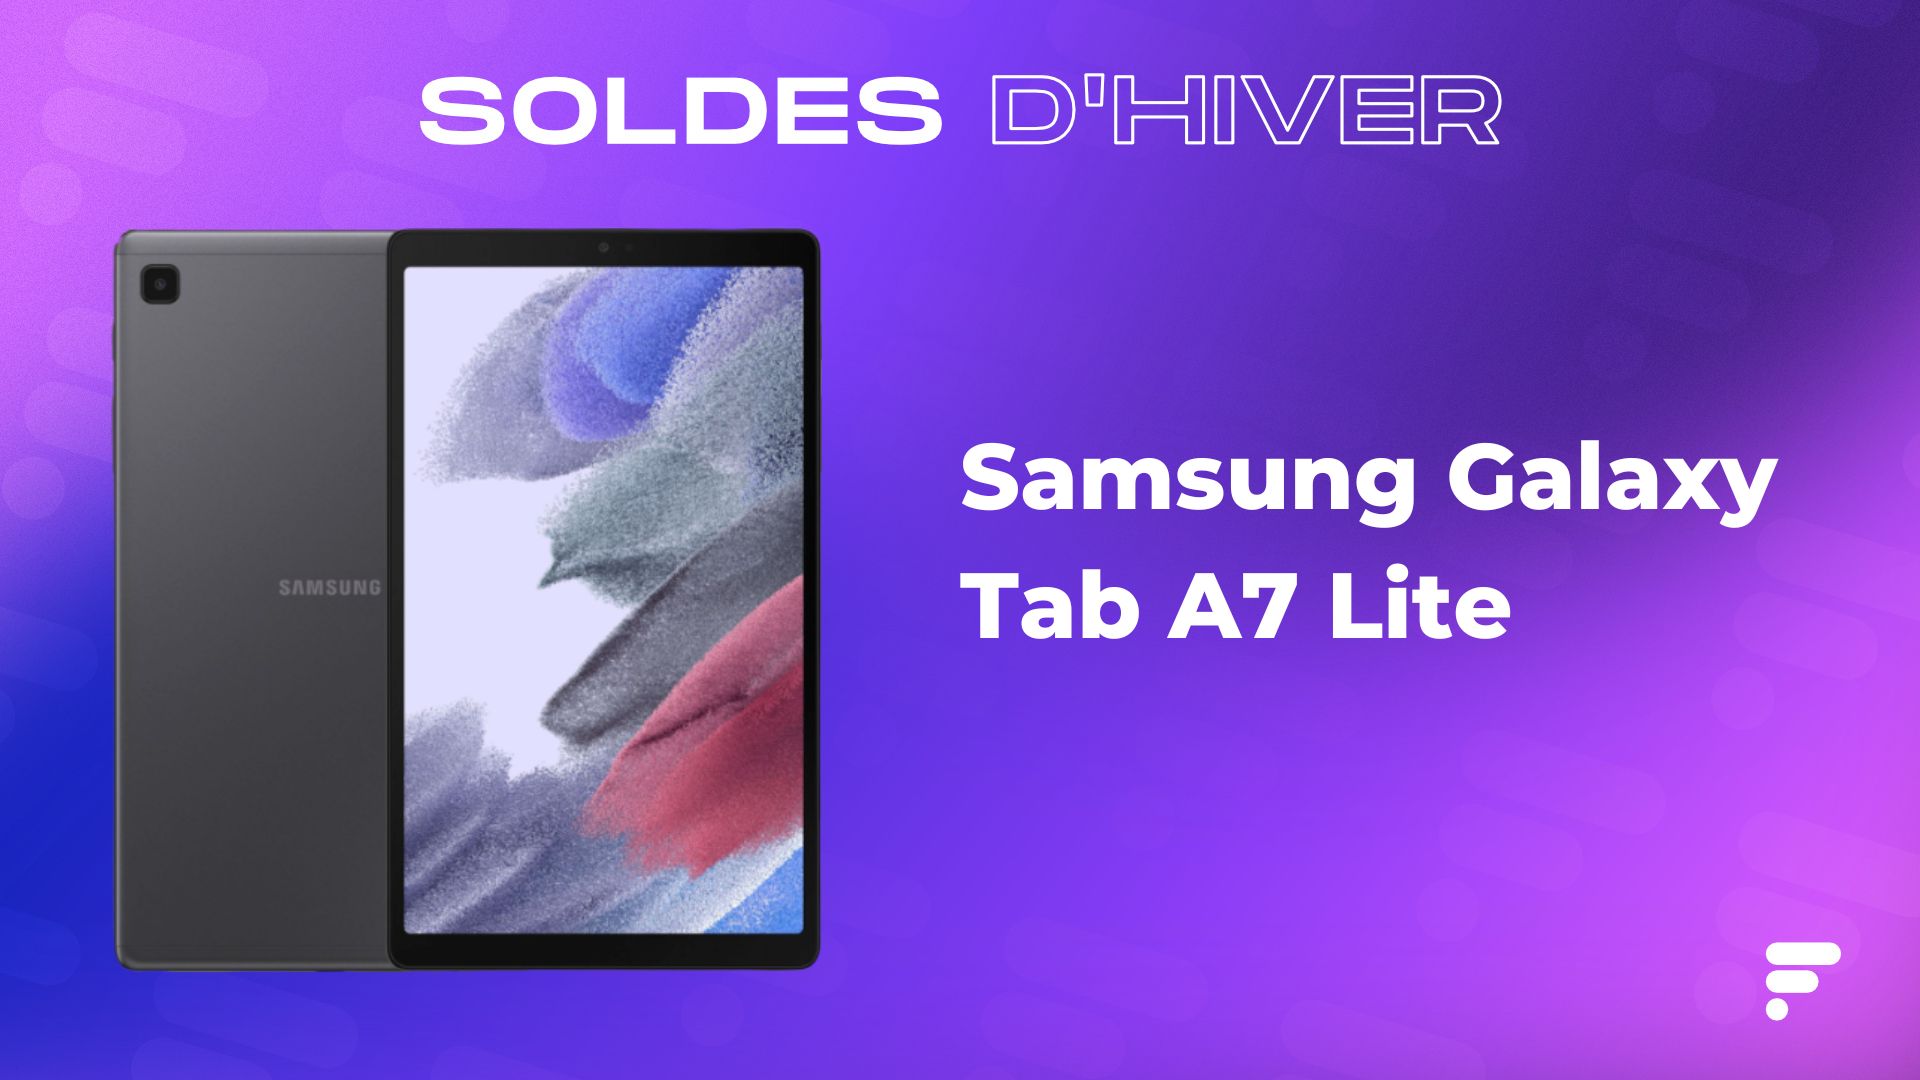 Samsung Galaxy Tab A8 : Cette tablette tactile abordable le devient encore  plus avec les soldes